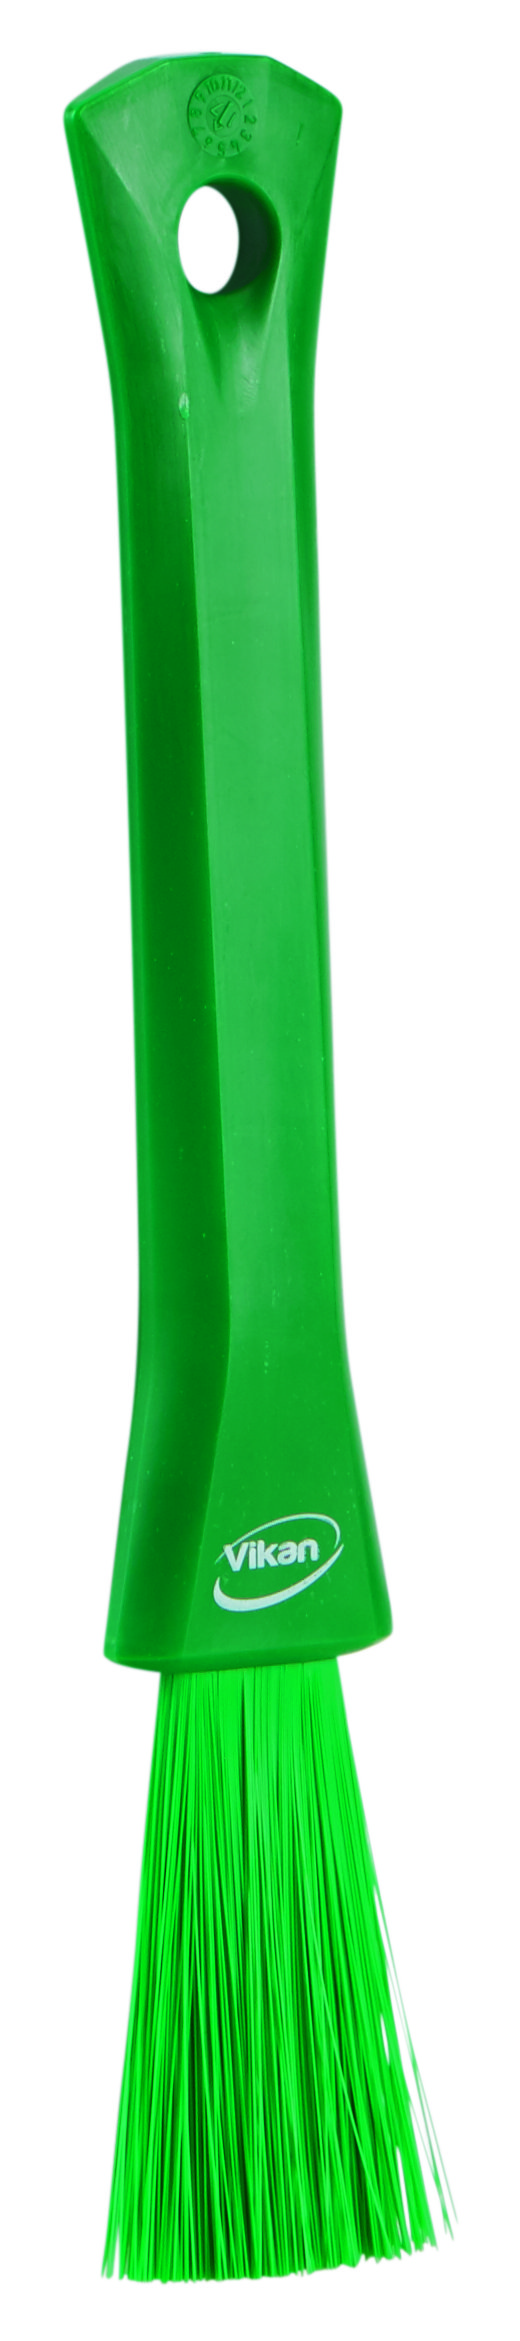 UST кисть для деталей, 30 мм, Мягкий, зеленый цвет